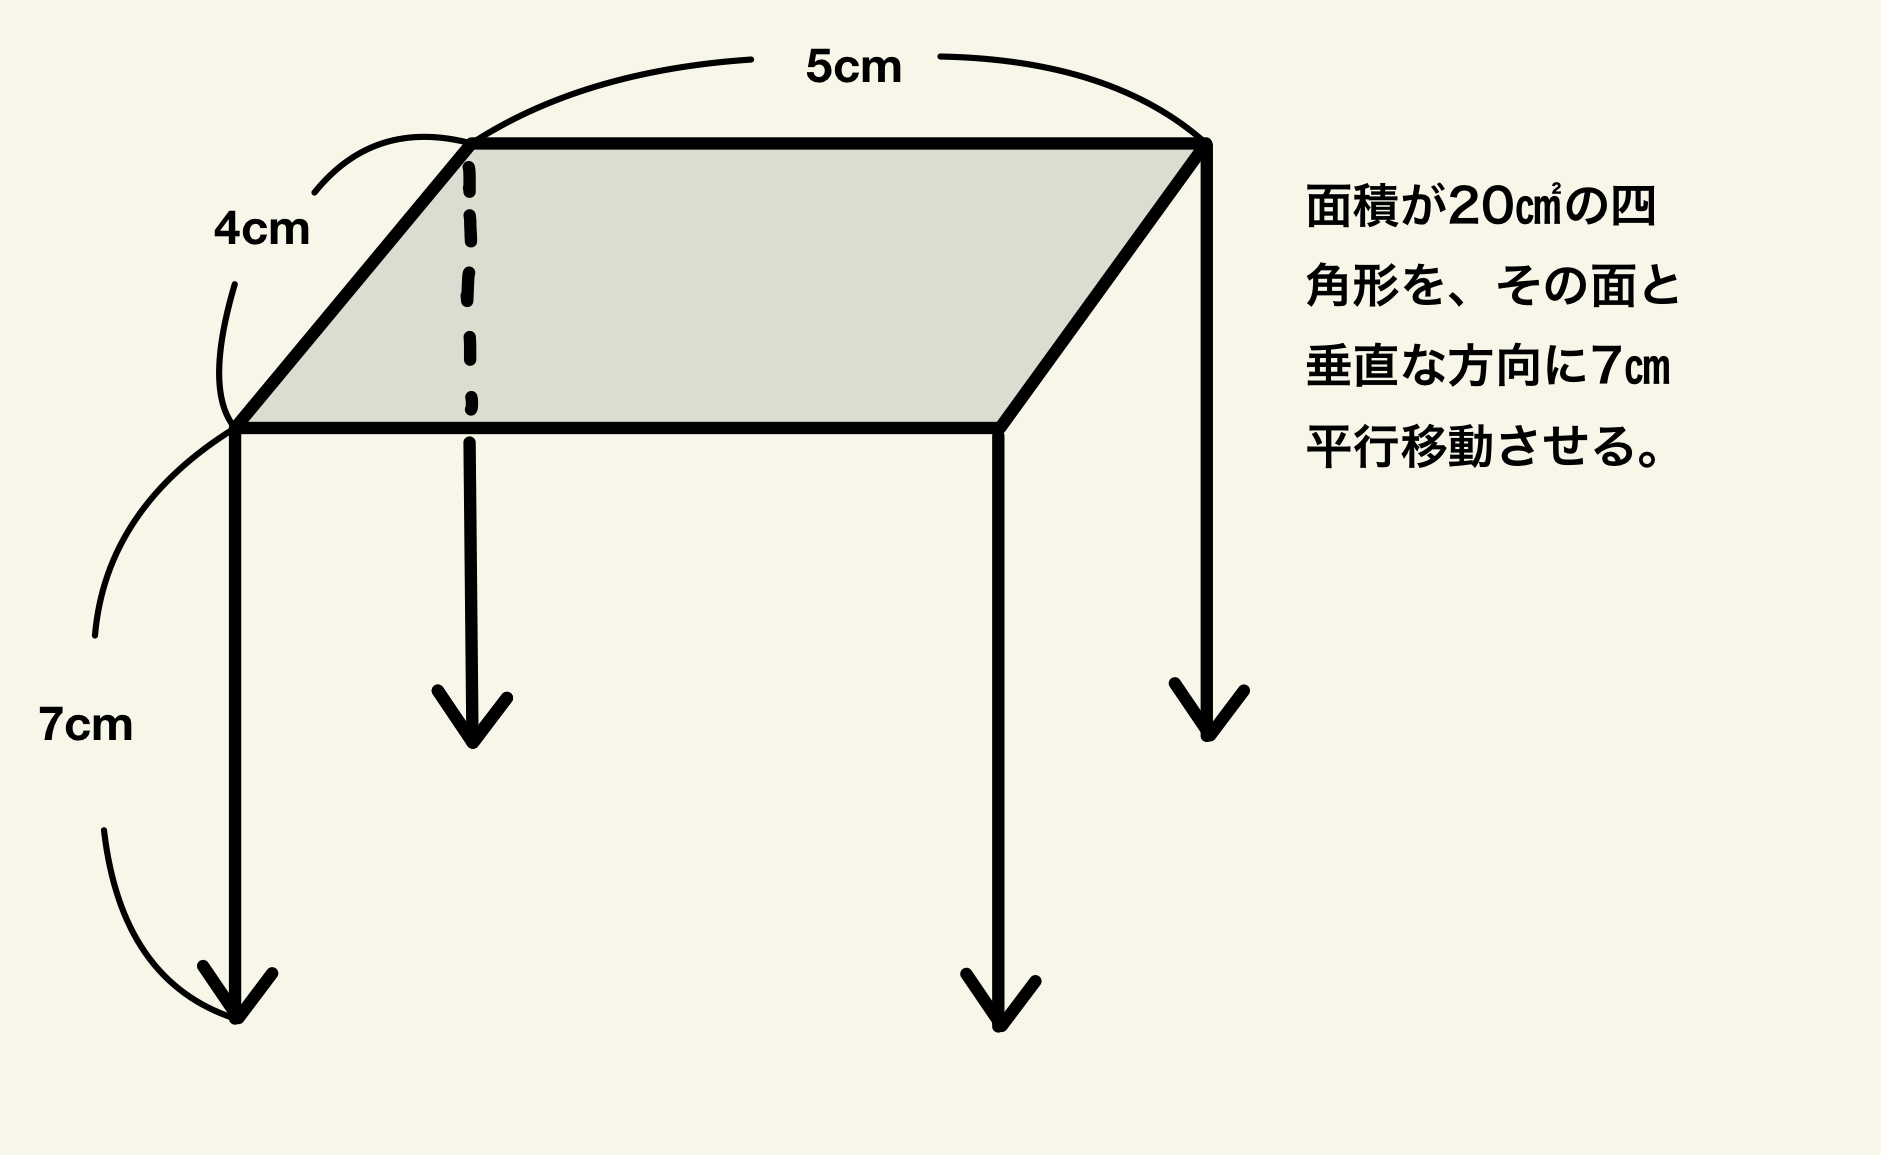 【図解】角柱と円柱の体積の求め方①